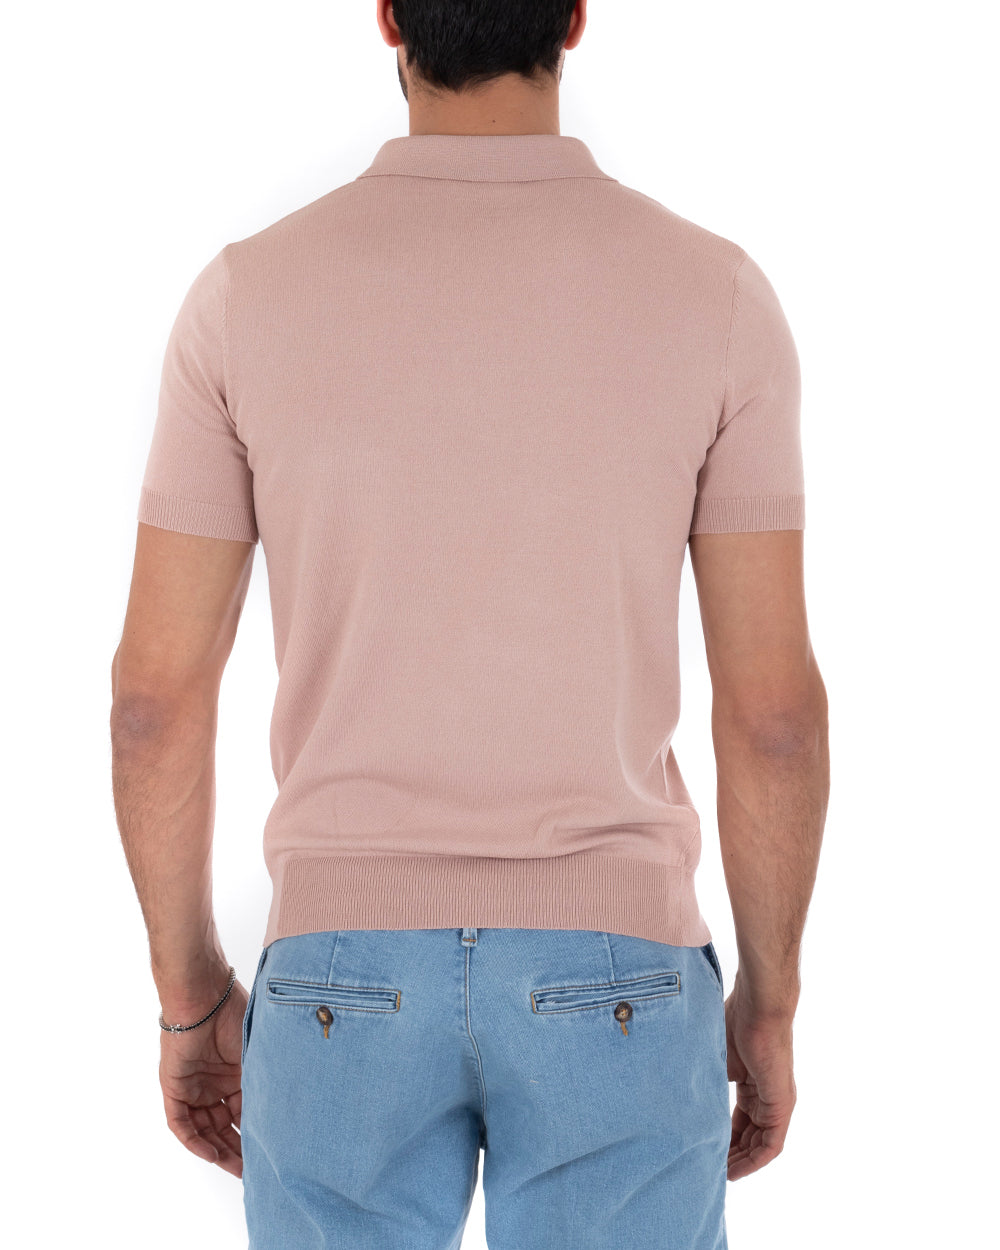 Polo Filo Uomo T-Shirt Manica Corta Con Colletto Bottoni Tinta Unita Rosa Casual GIOSAL-TS2636A